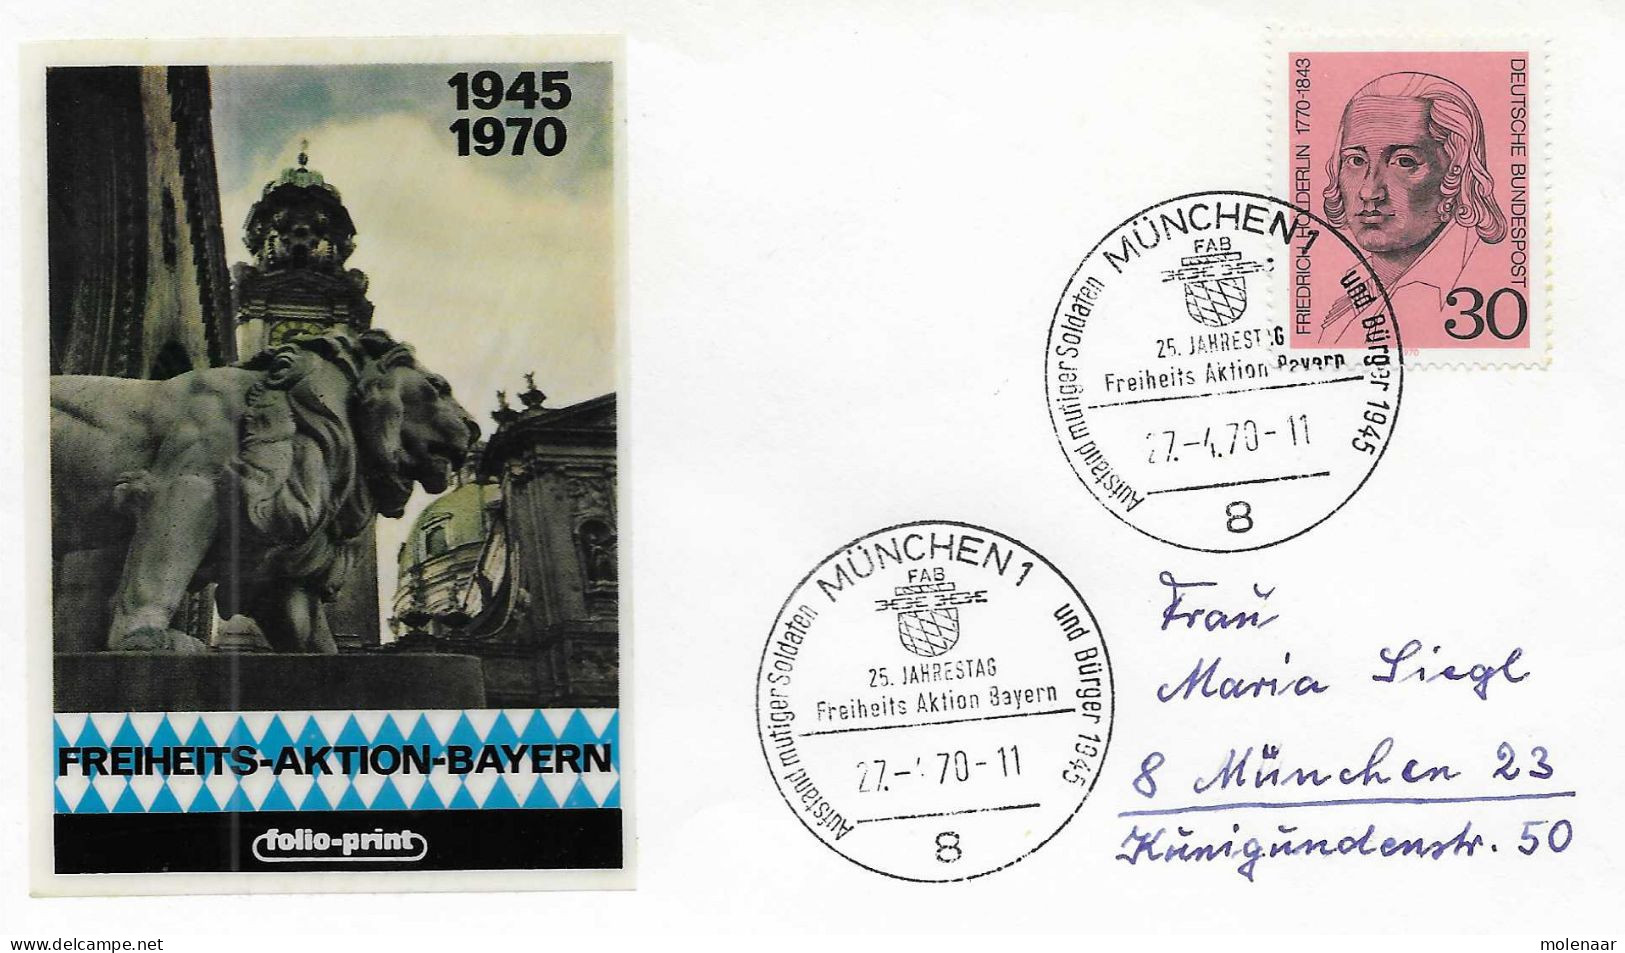 Postzegels > Europa > Duitsland > Berlijn > 1980-1990 > Brief Met No. 618  (17244) - Briefe U. Dokumente